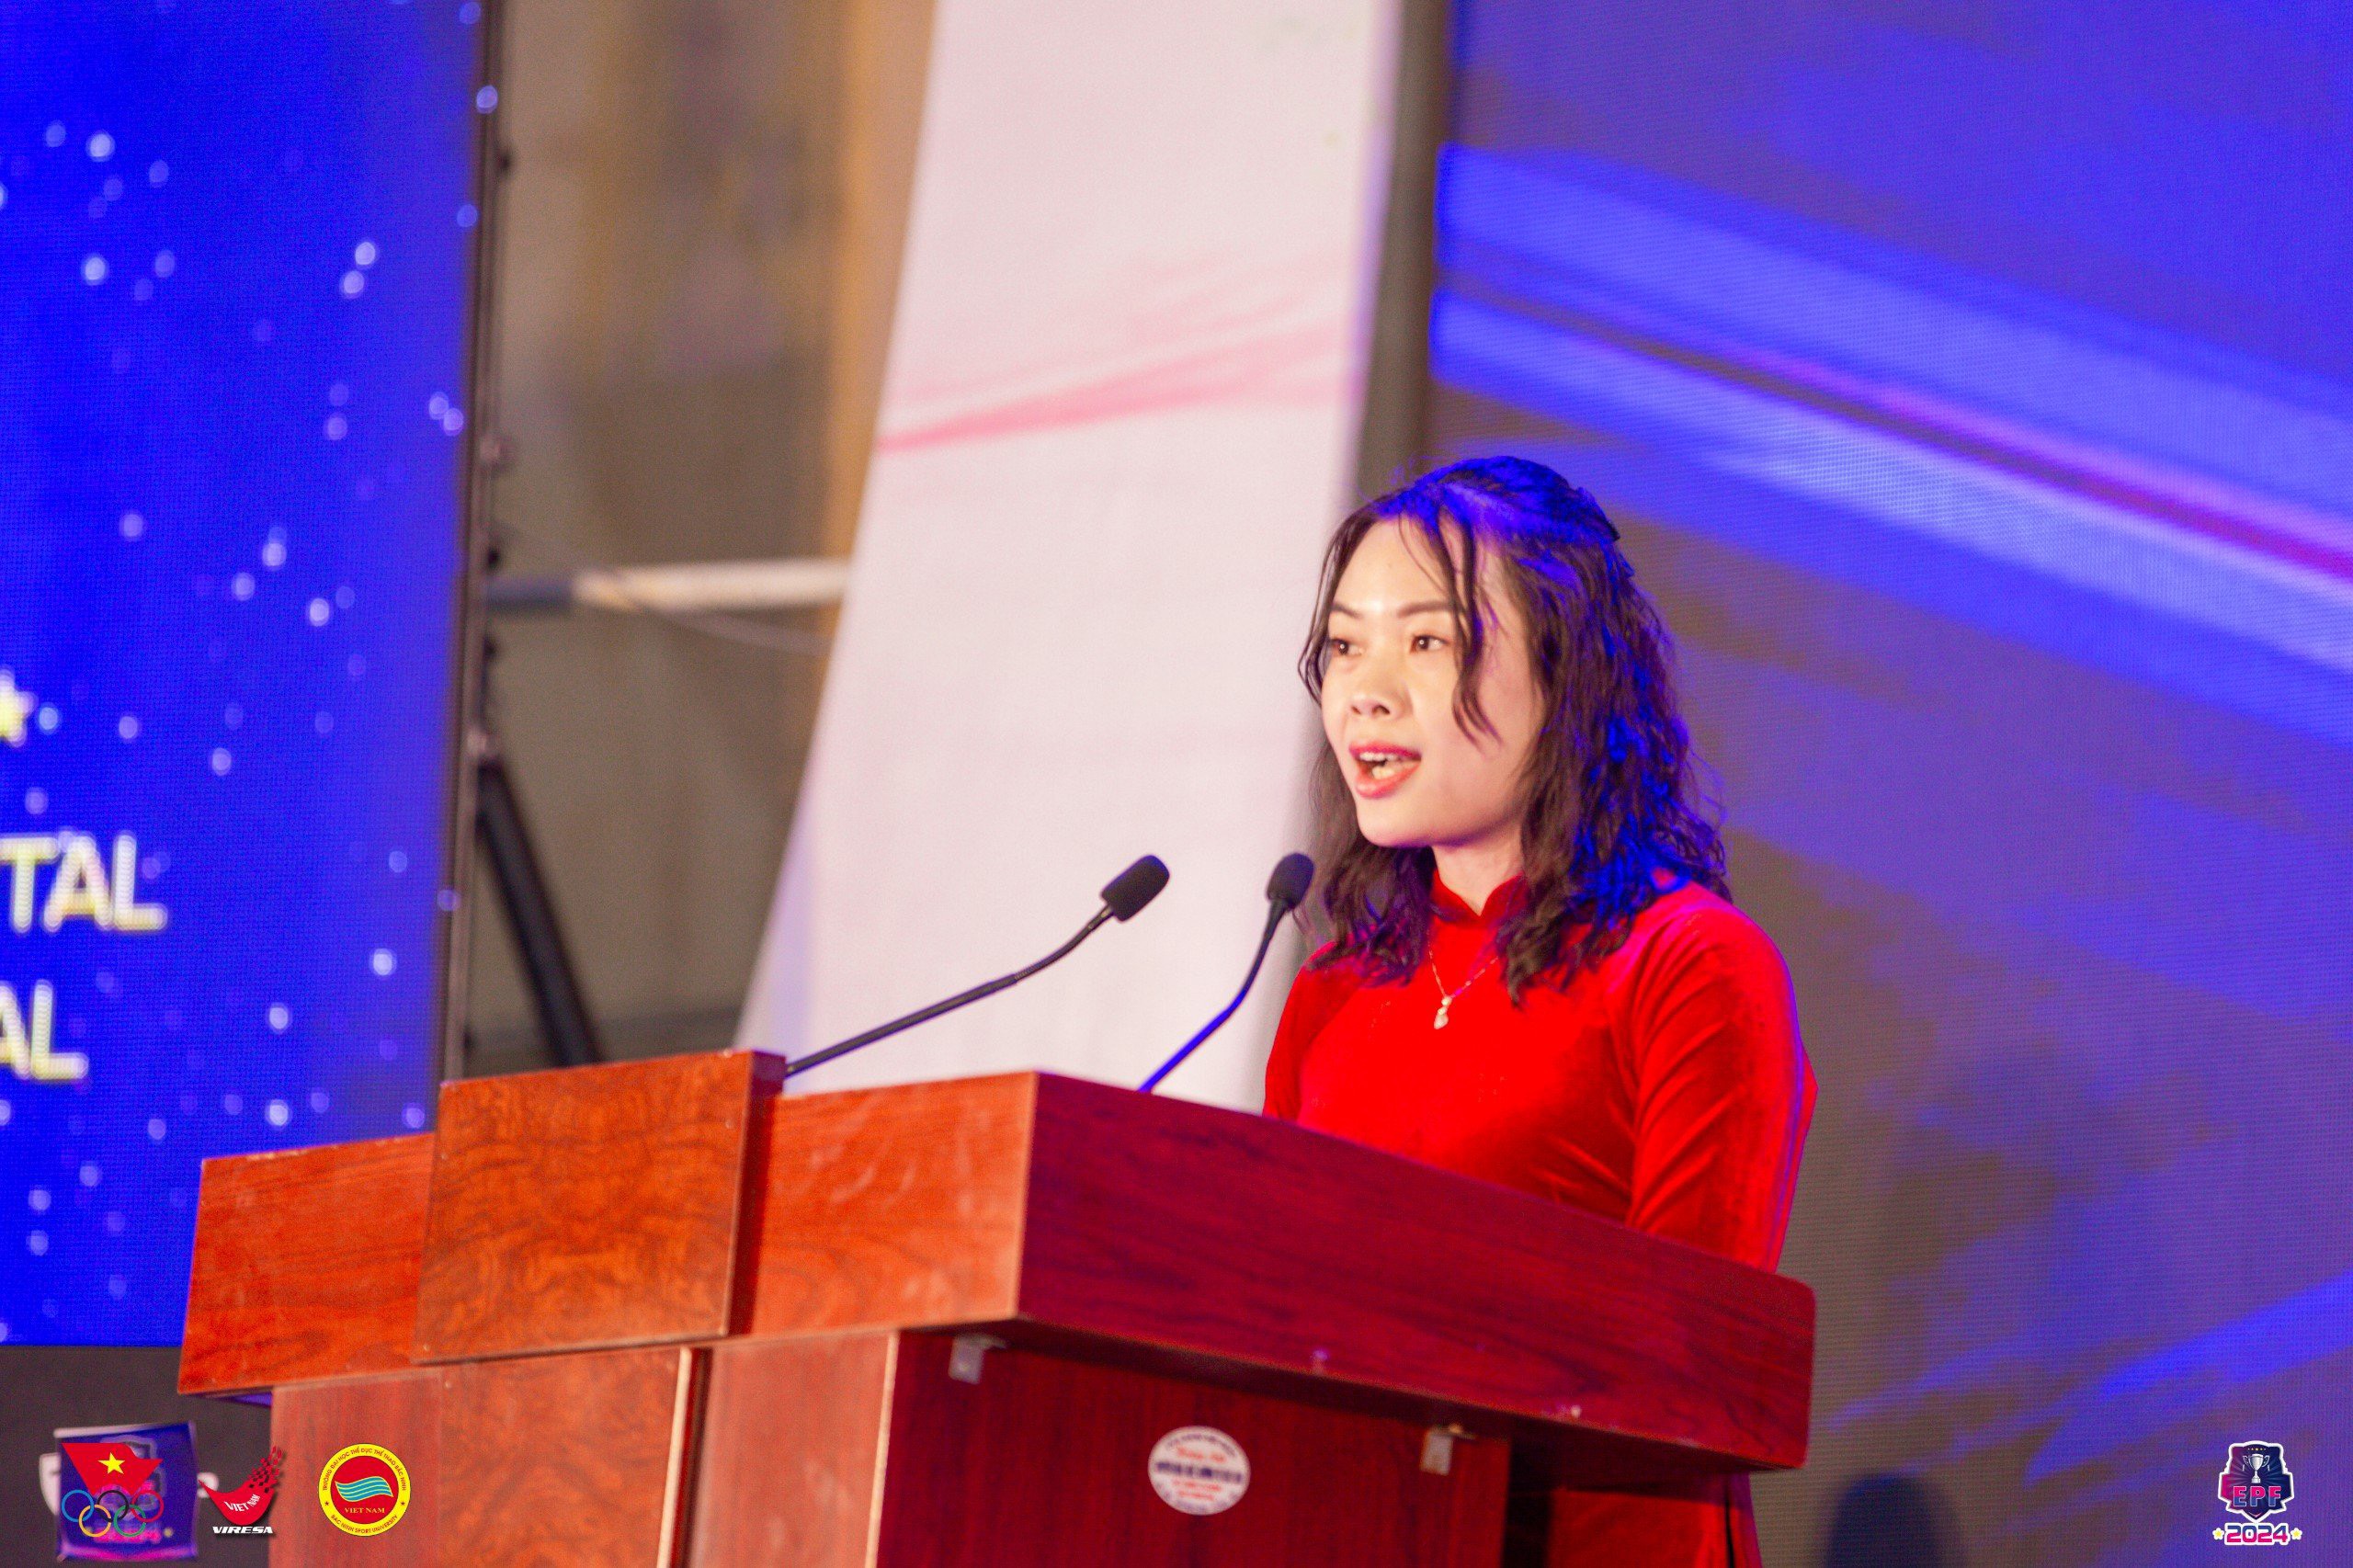 Bà Phạm Thị Vân – Phó Trưởng đại diện Kỷ lục Việt Nam tạ miền Bắc đại diện công bố quyết định xác lập Kỷ lục.